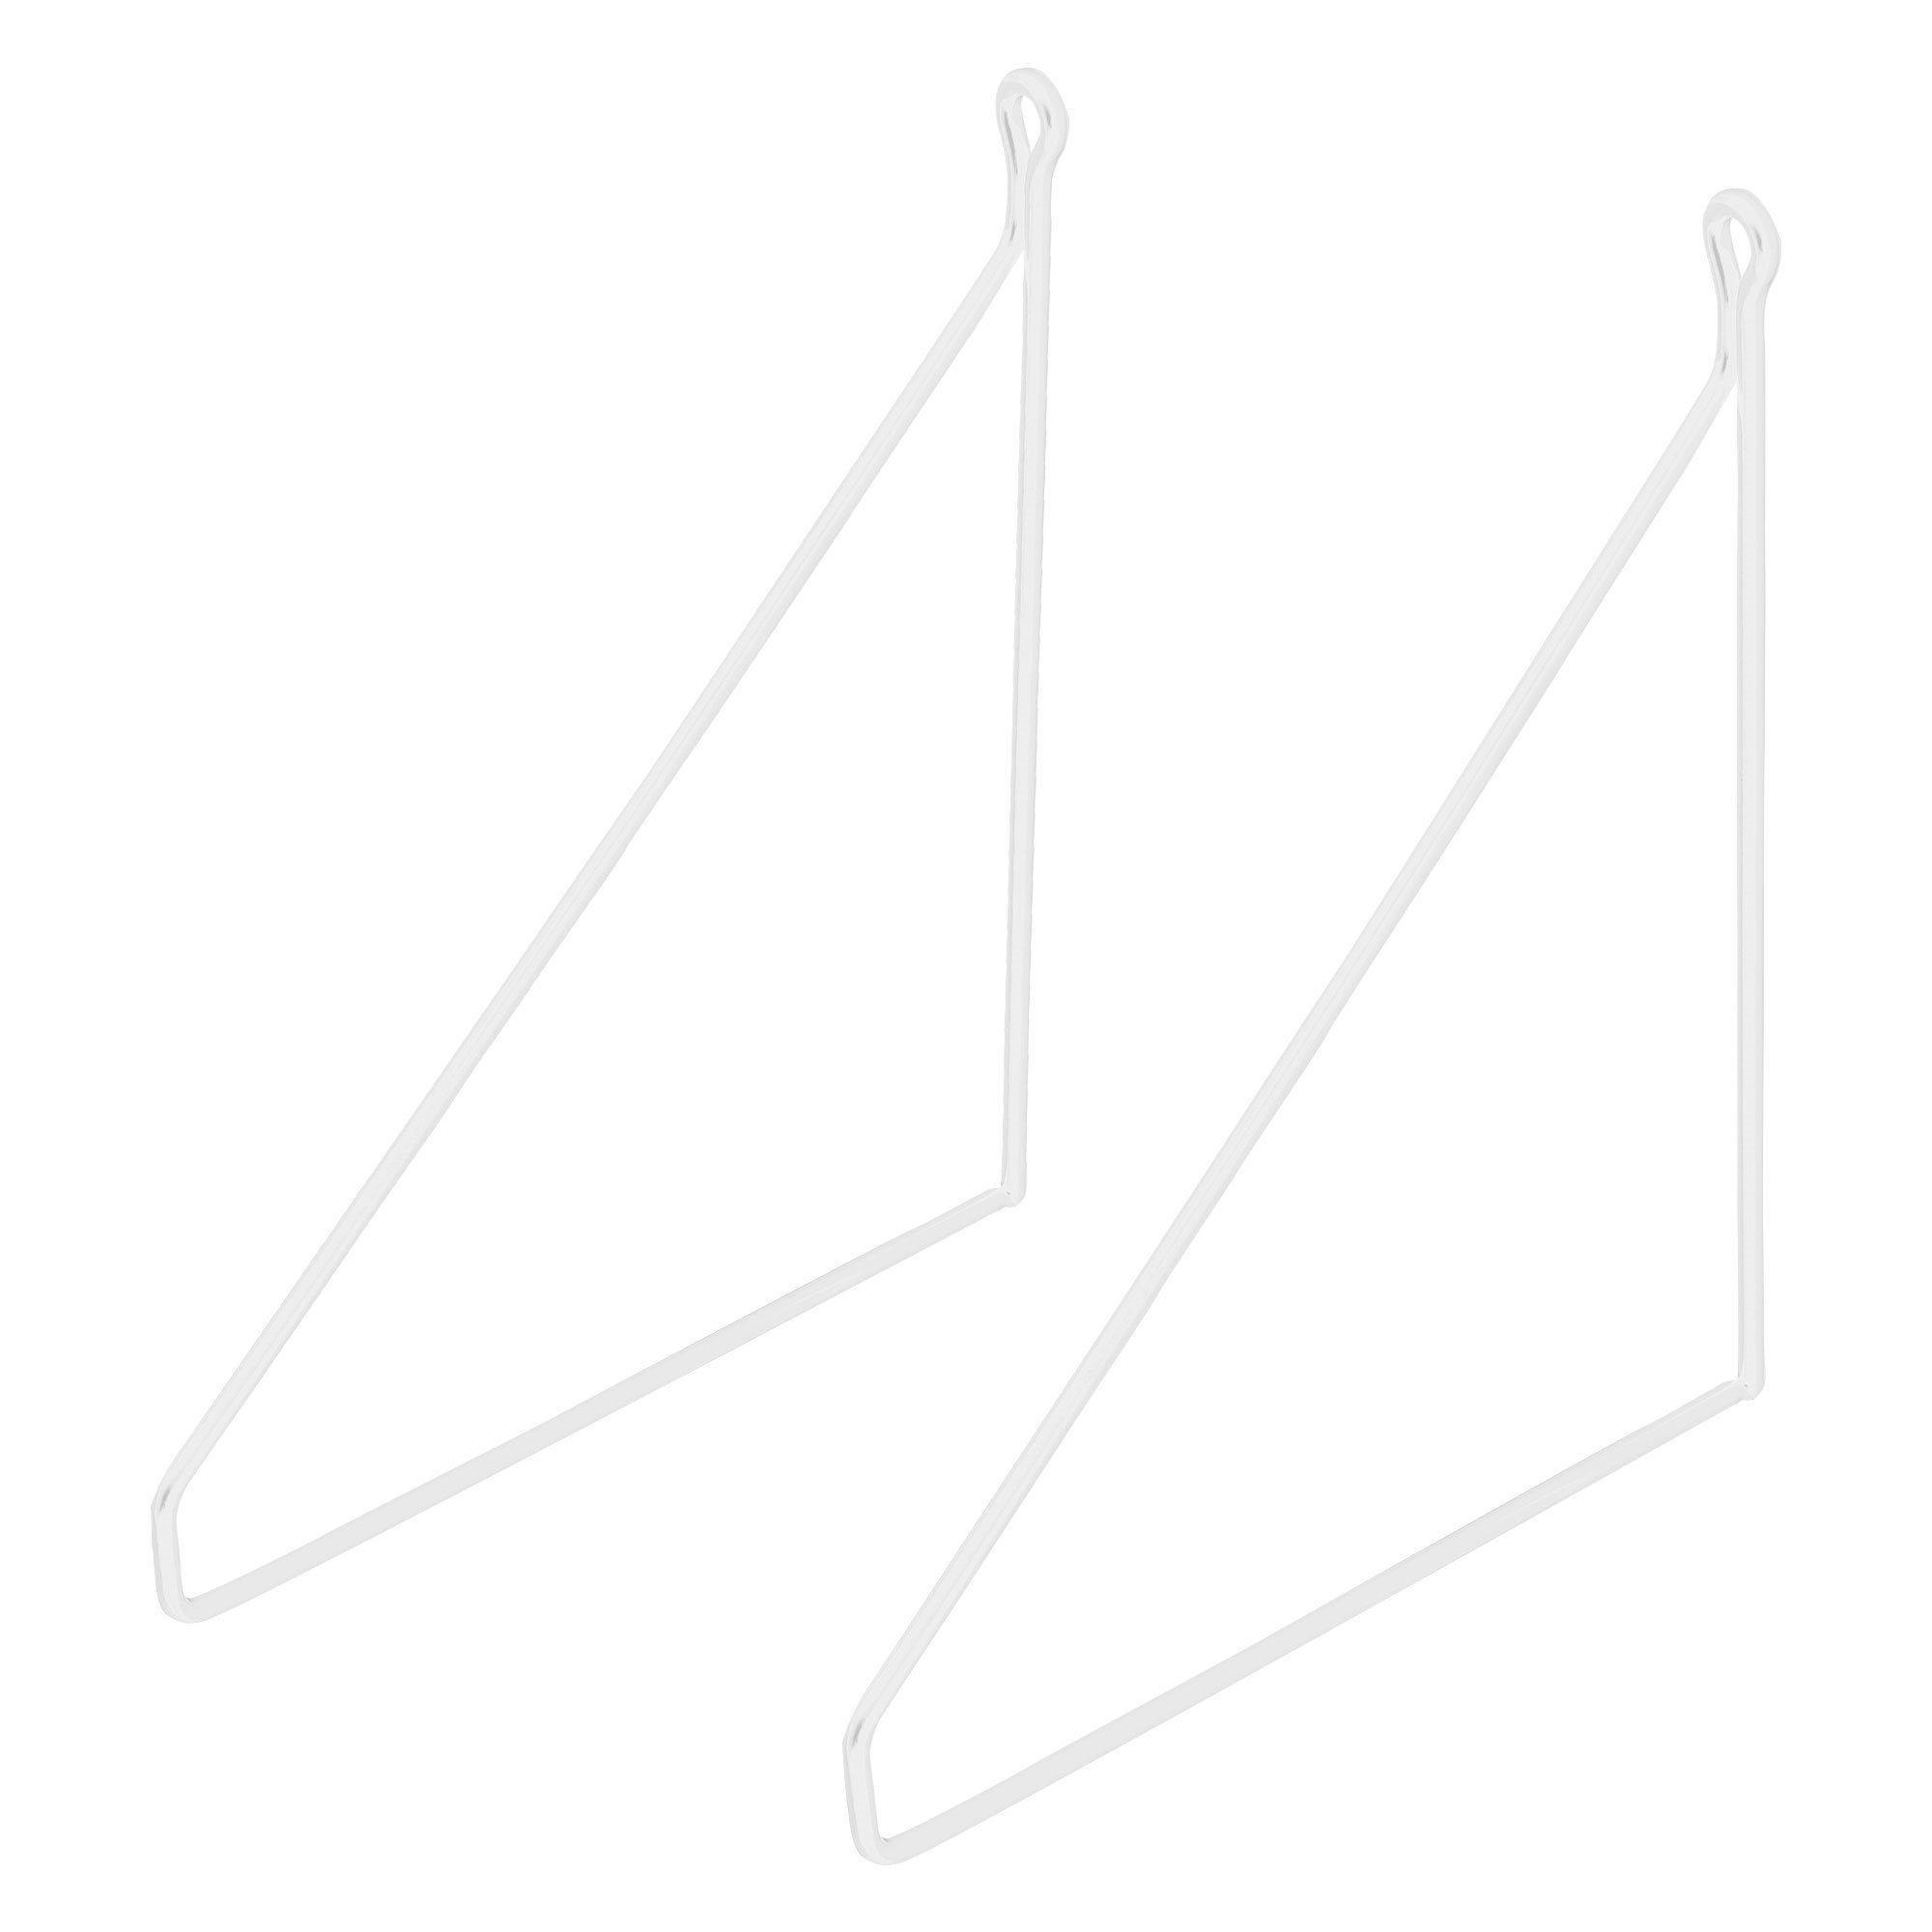 ML-DESIGN Regal Wandmontage Metall 250mm Wandhalterung Draht Dreieckig Stück Regalhalterung Regalträger, 2 Schwebe Weiß Regalwinkel